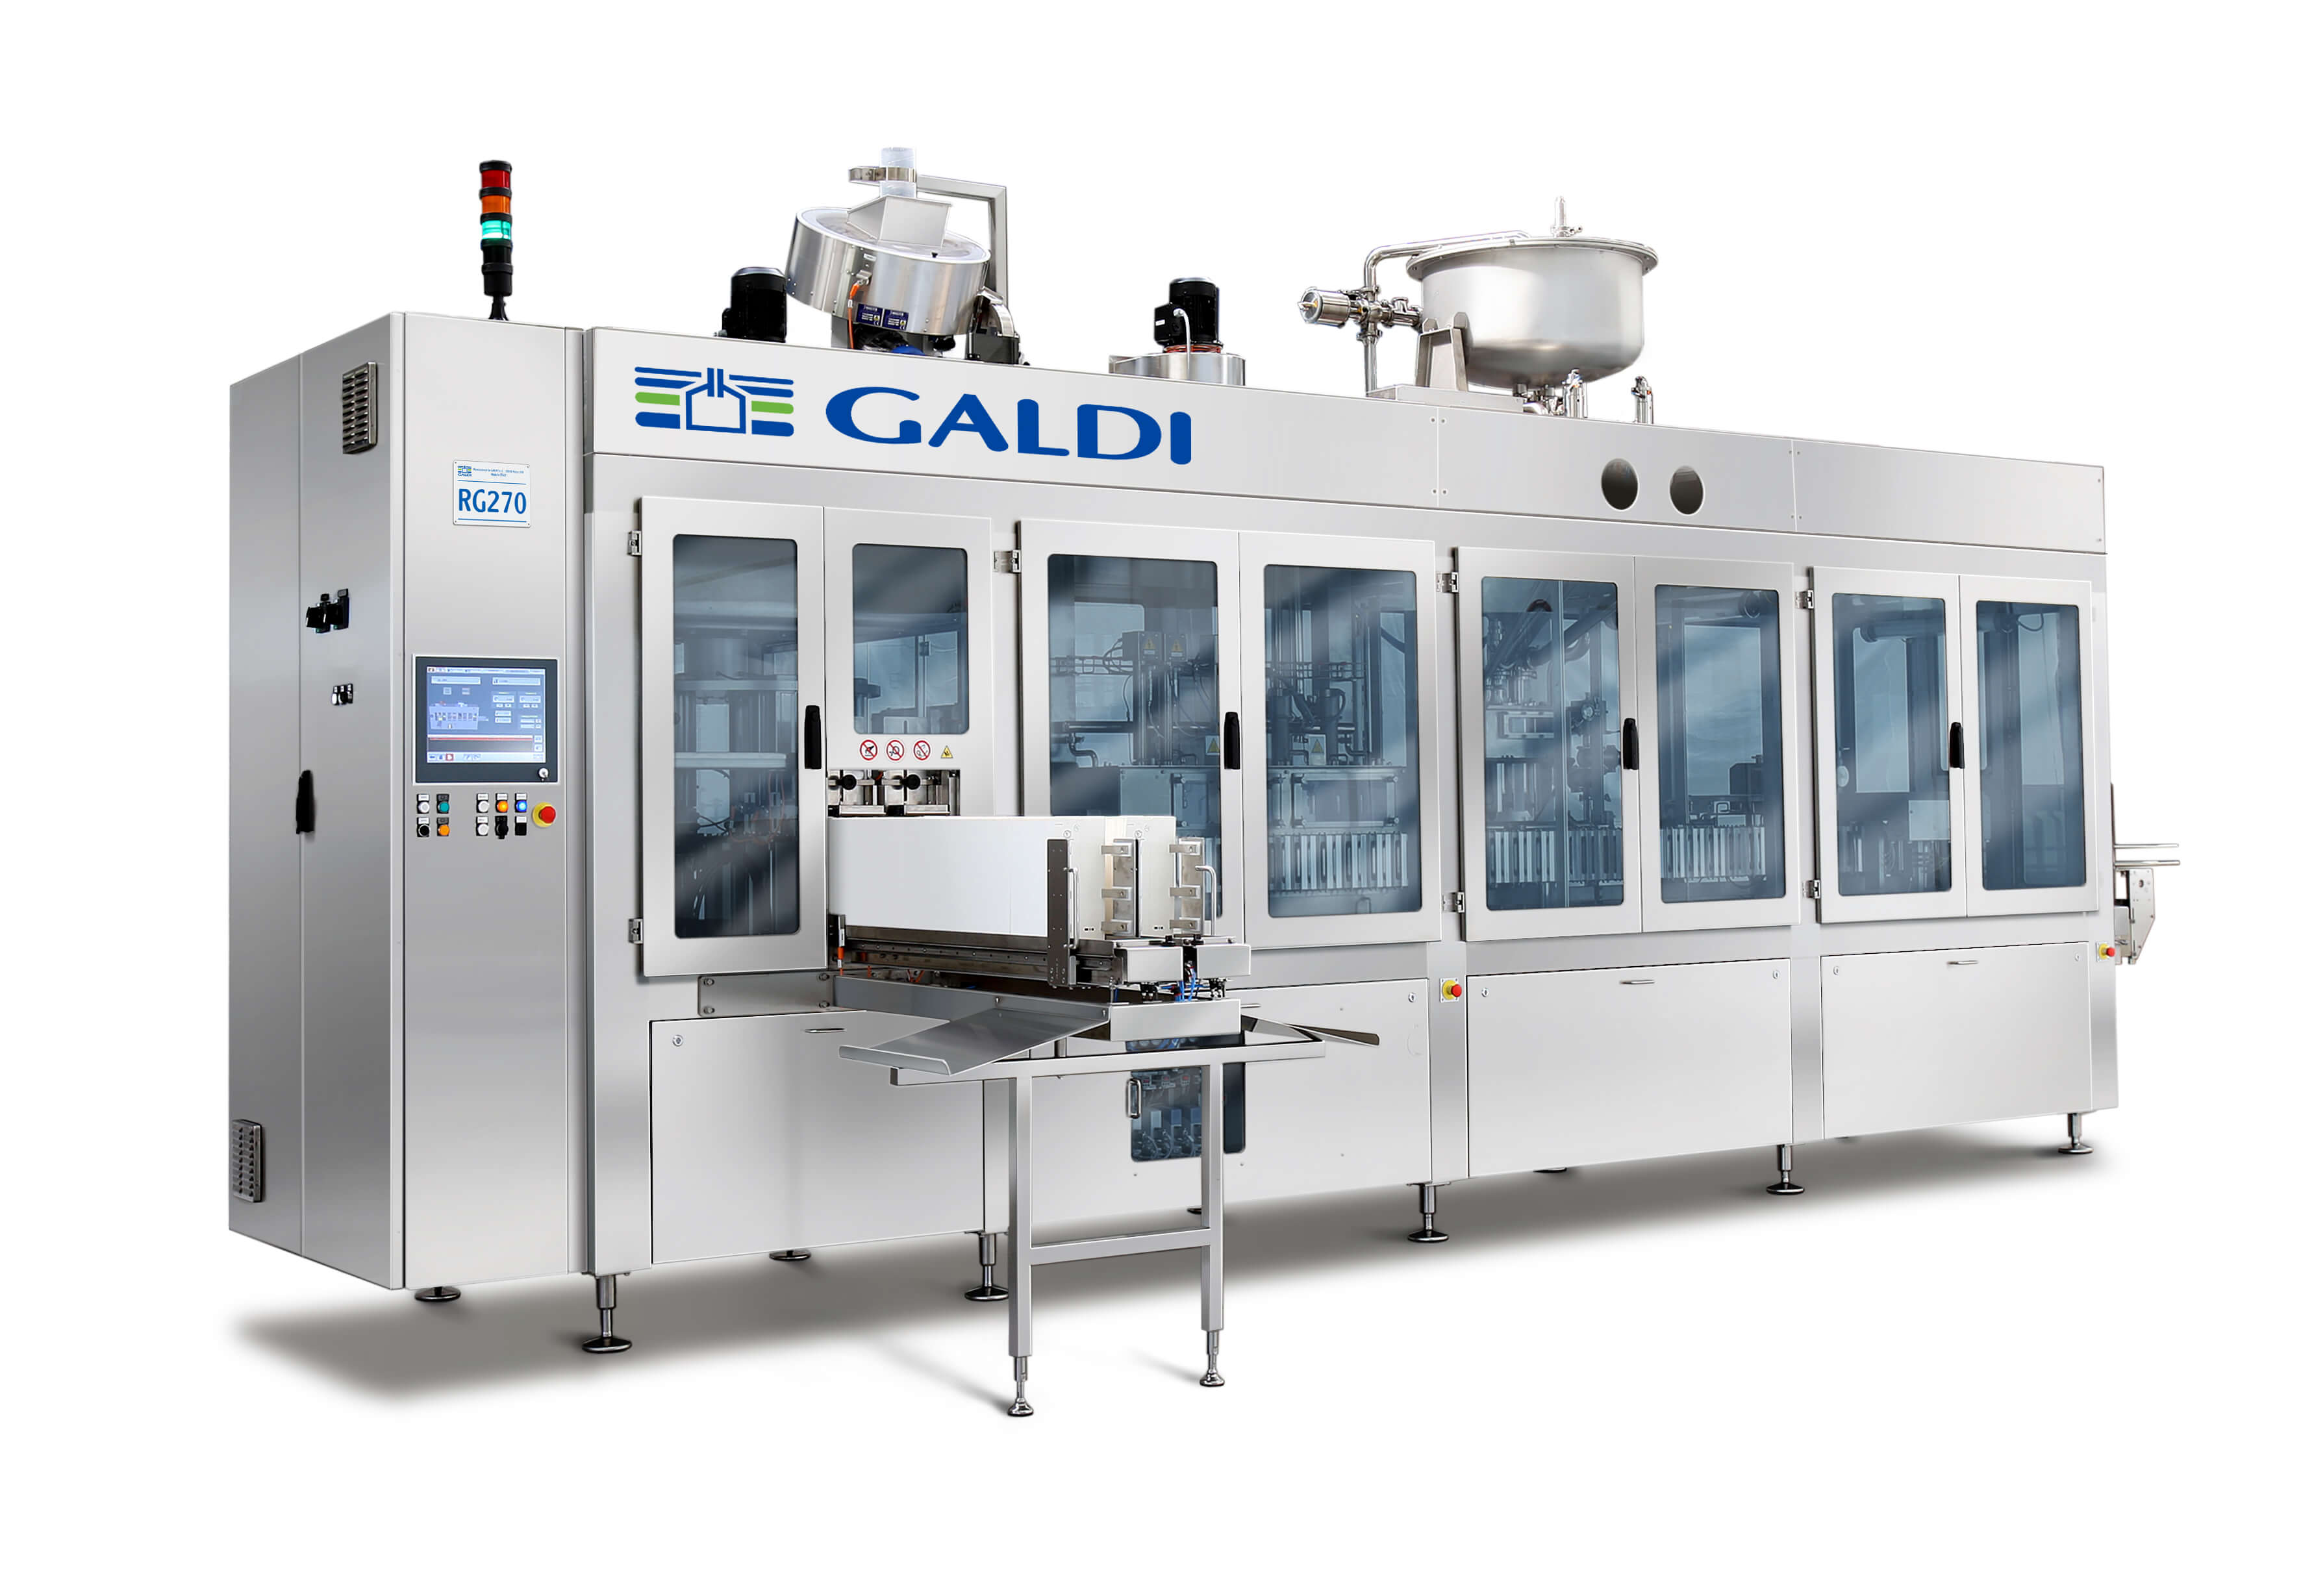 Galdi Machine series RG270 Ultra Clean